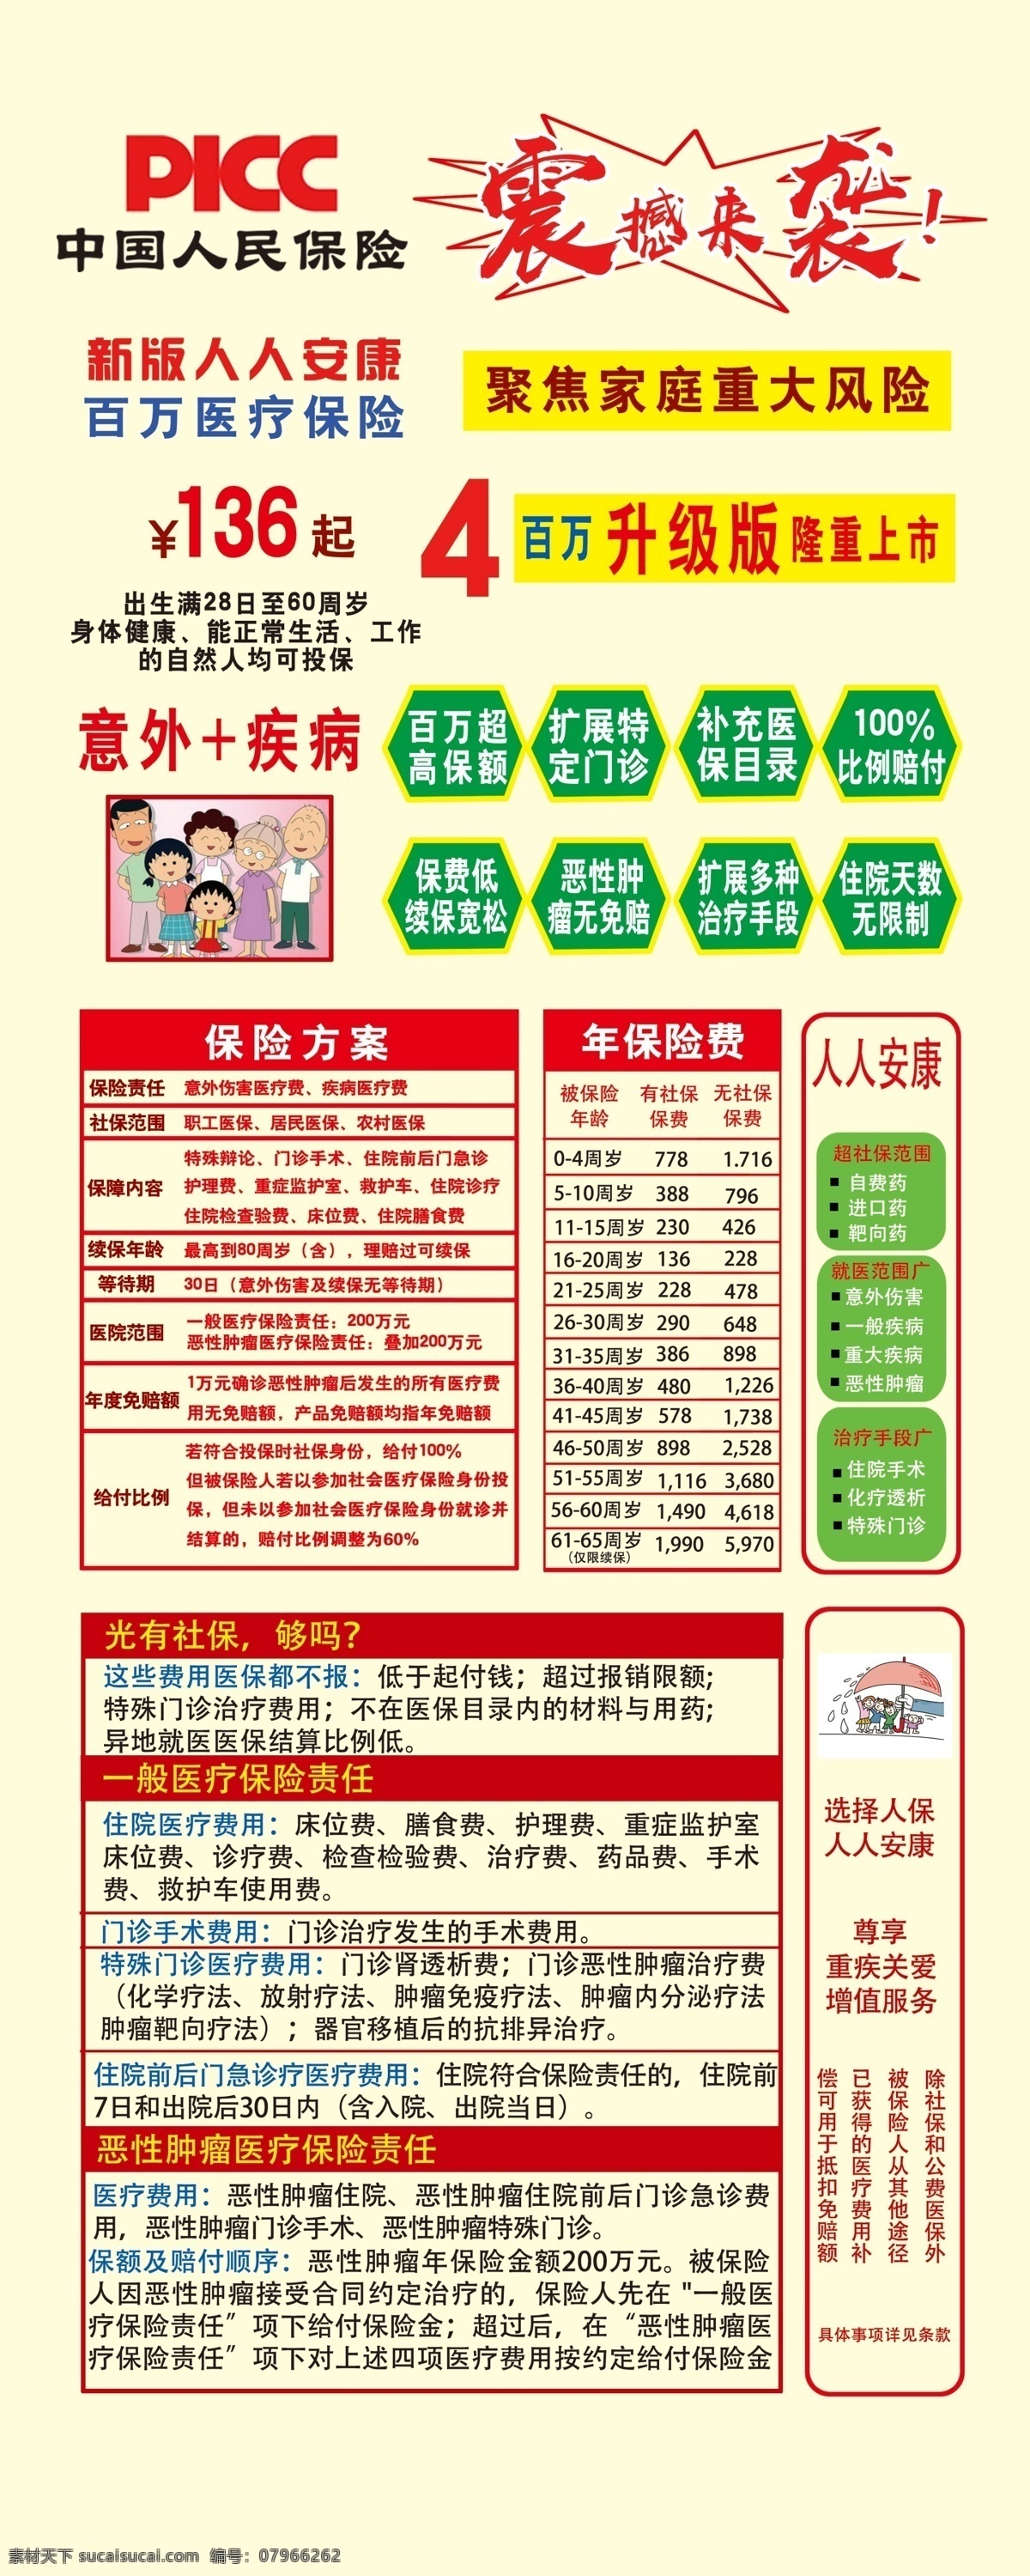 中国人保 picc 保险 展架 大额保费 分层